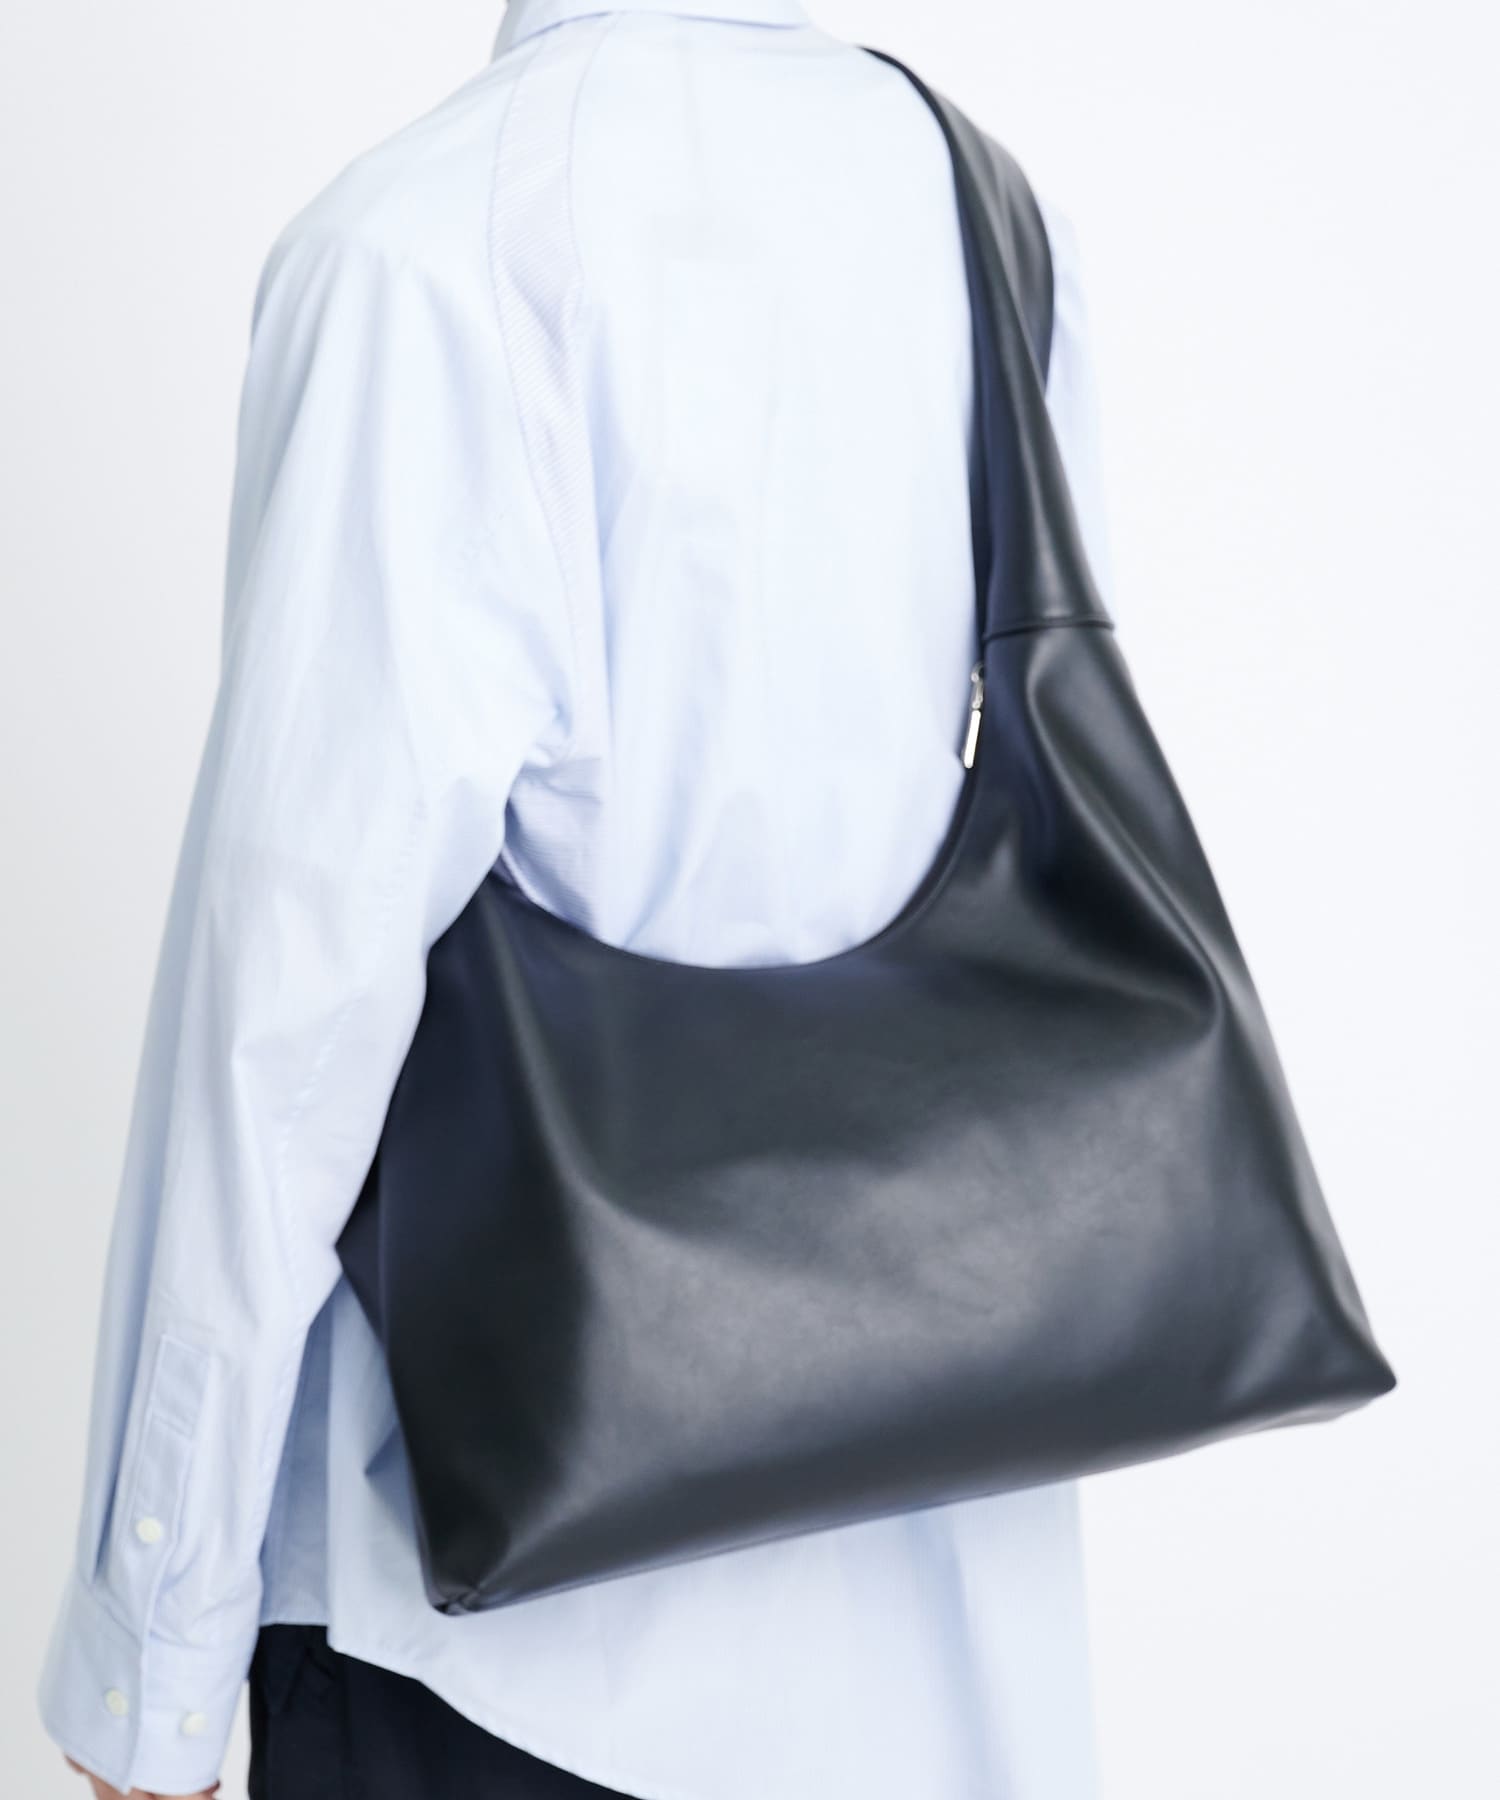 Oversize leather shoulder bag STUDIOUS